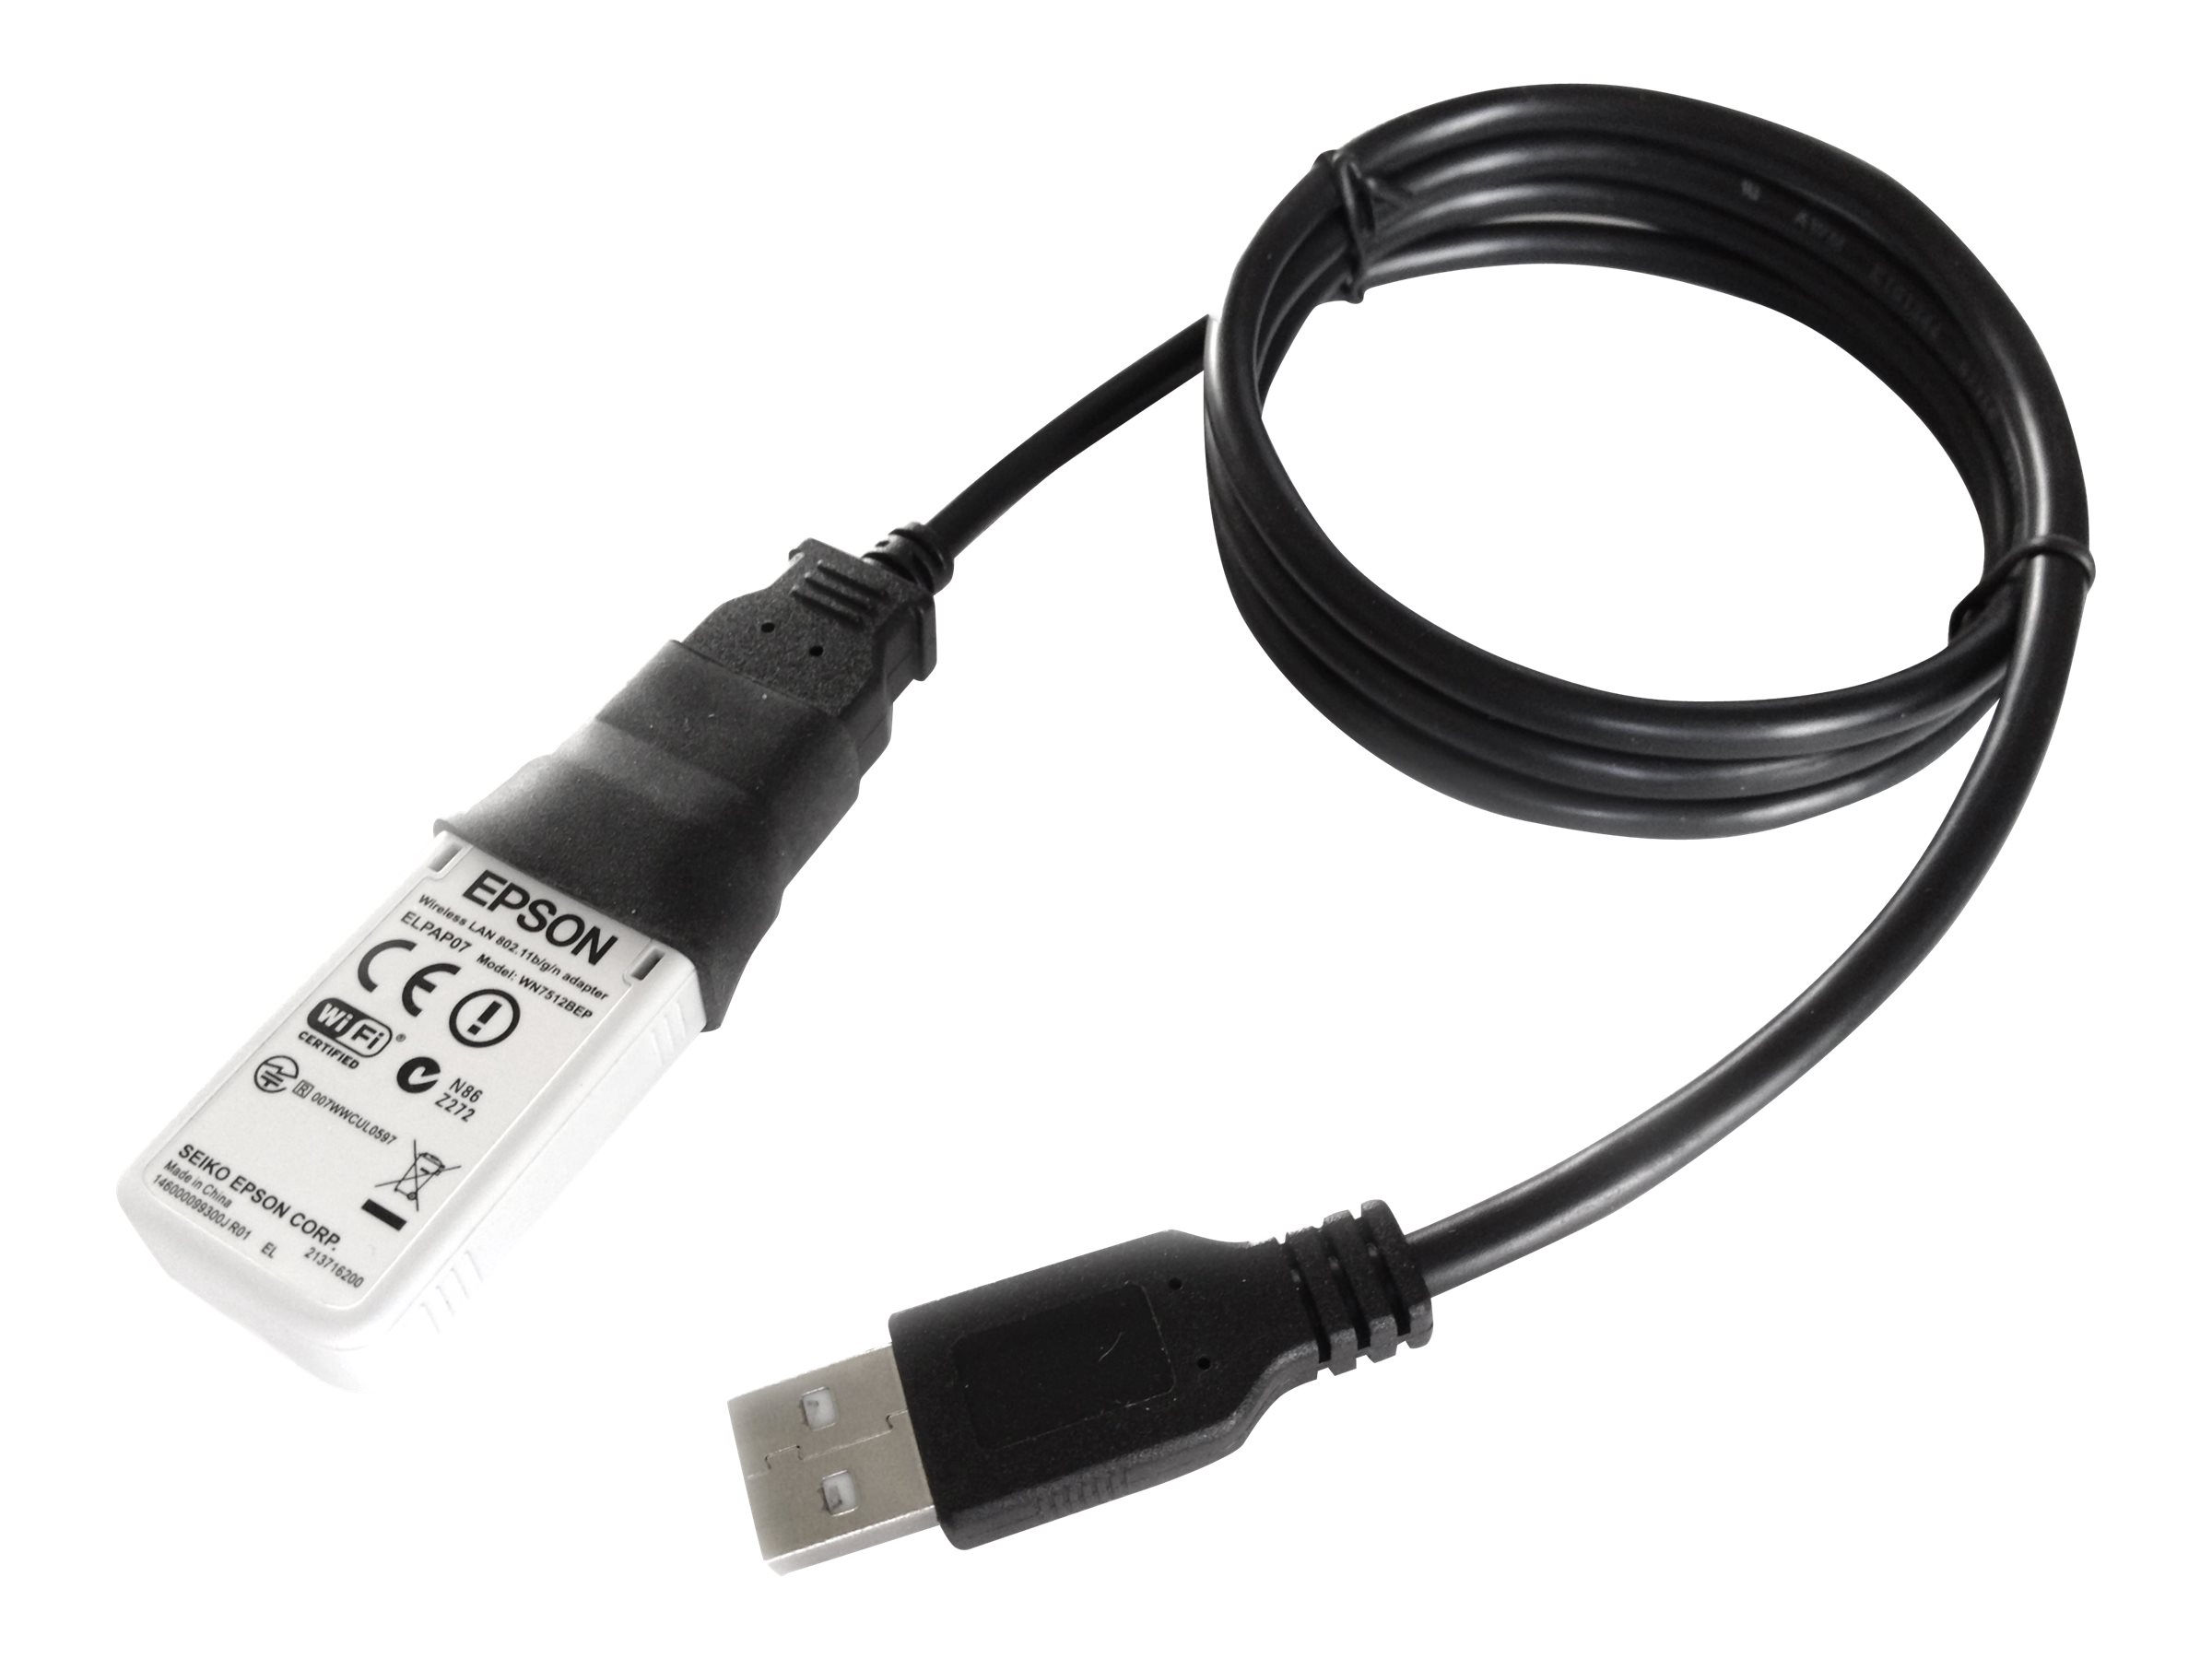 Epson OT-WL06-323 - Netzwerkadapter - USB - 802.11a, 802.11b/g/n - für ColorWorks CW-C4000; OmniLink TM-m30; TM M30, T20, T88